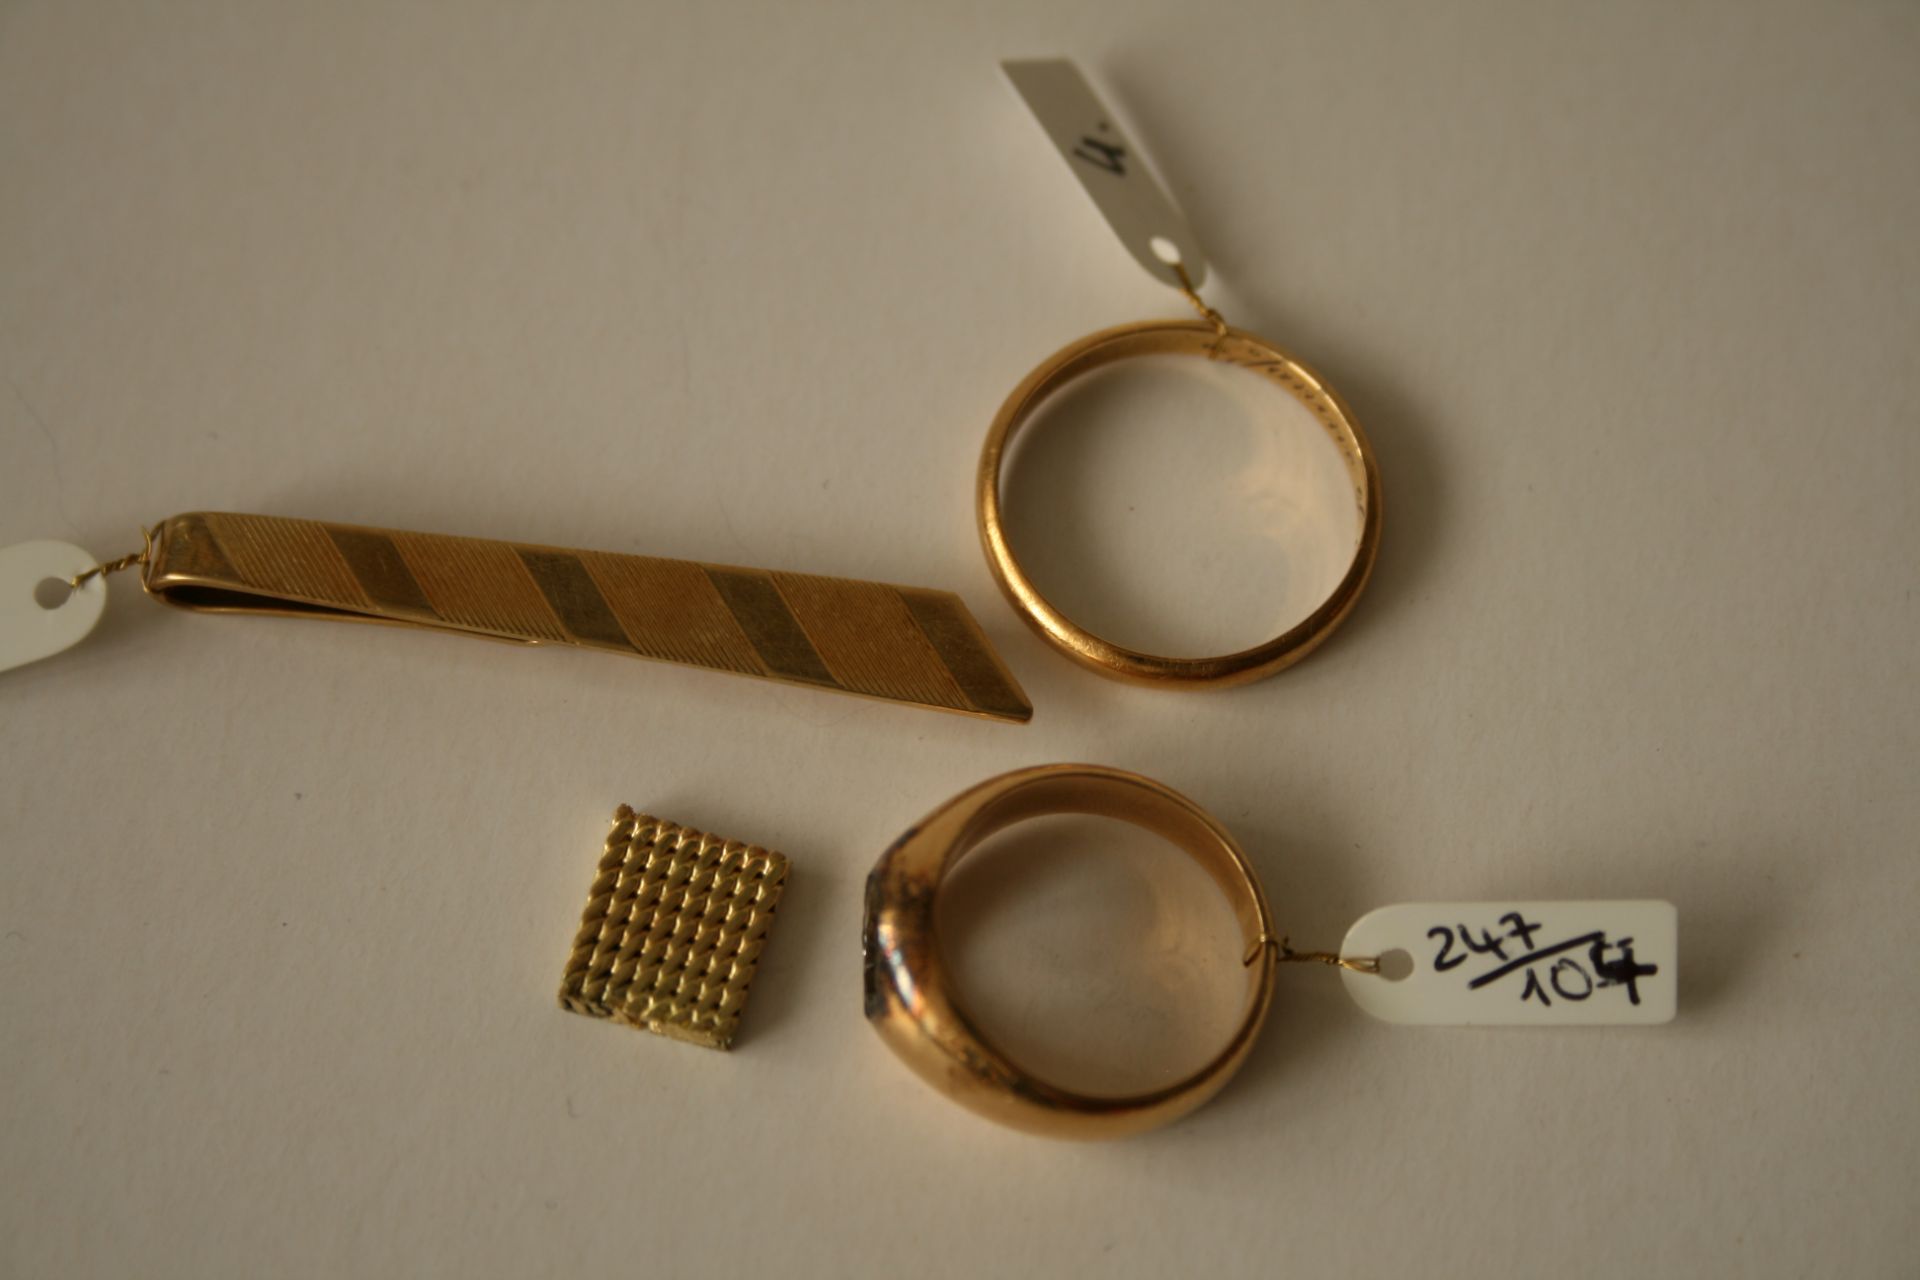 Maille d'un bracelet, or jaune 750 - Longueur: 11 mm, Largeur: 9 mm, Poids: 2,74 g + [...]